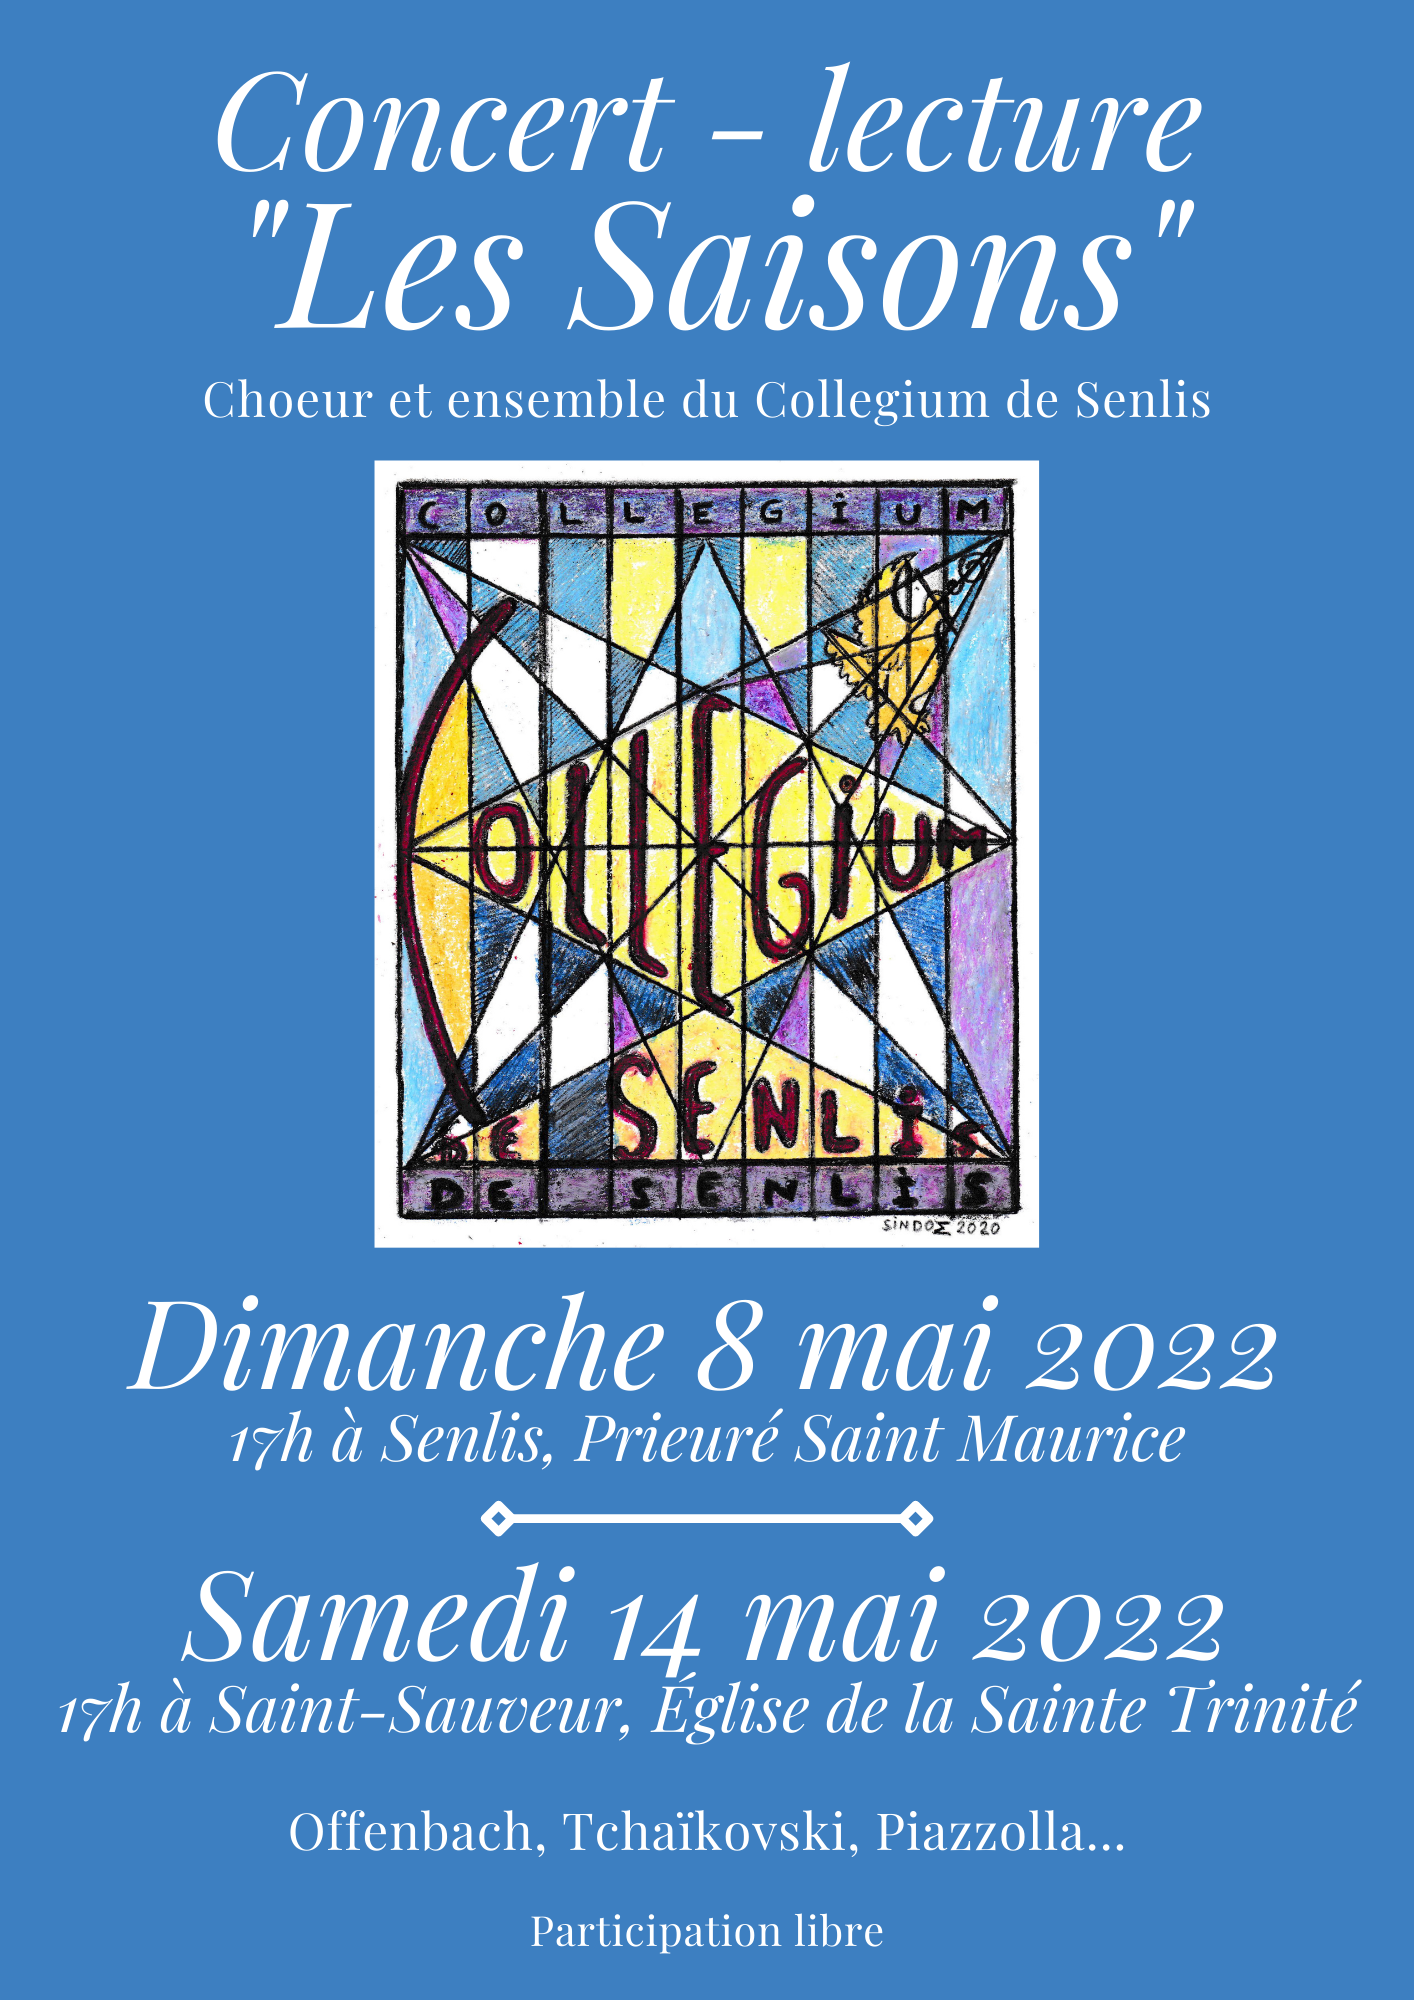 Concert lecture Les Saisons 8 et 14 mai 2022